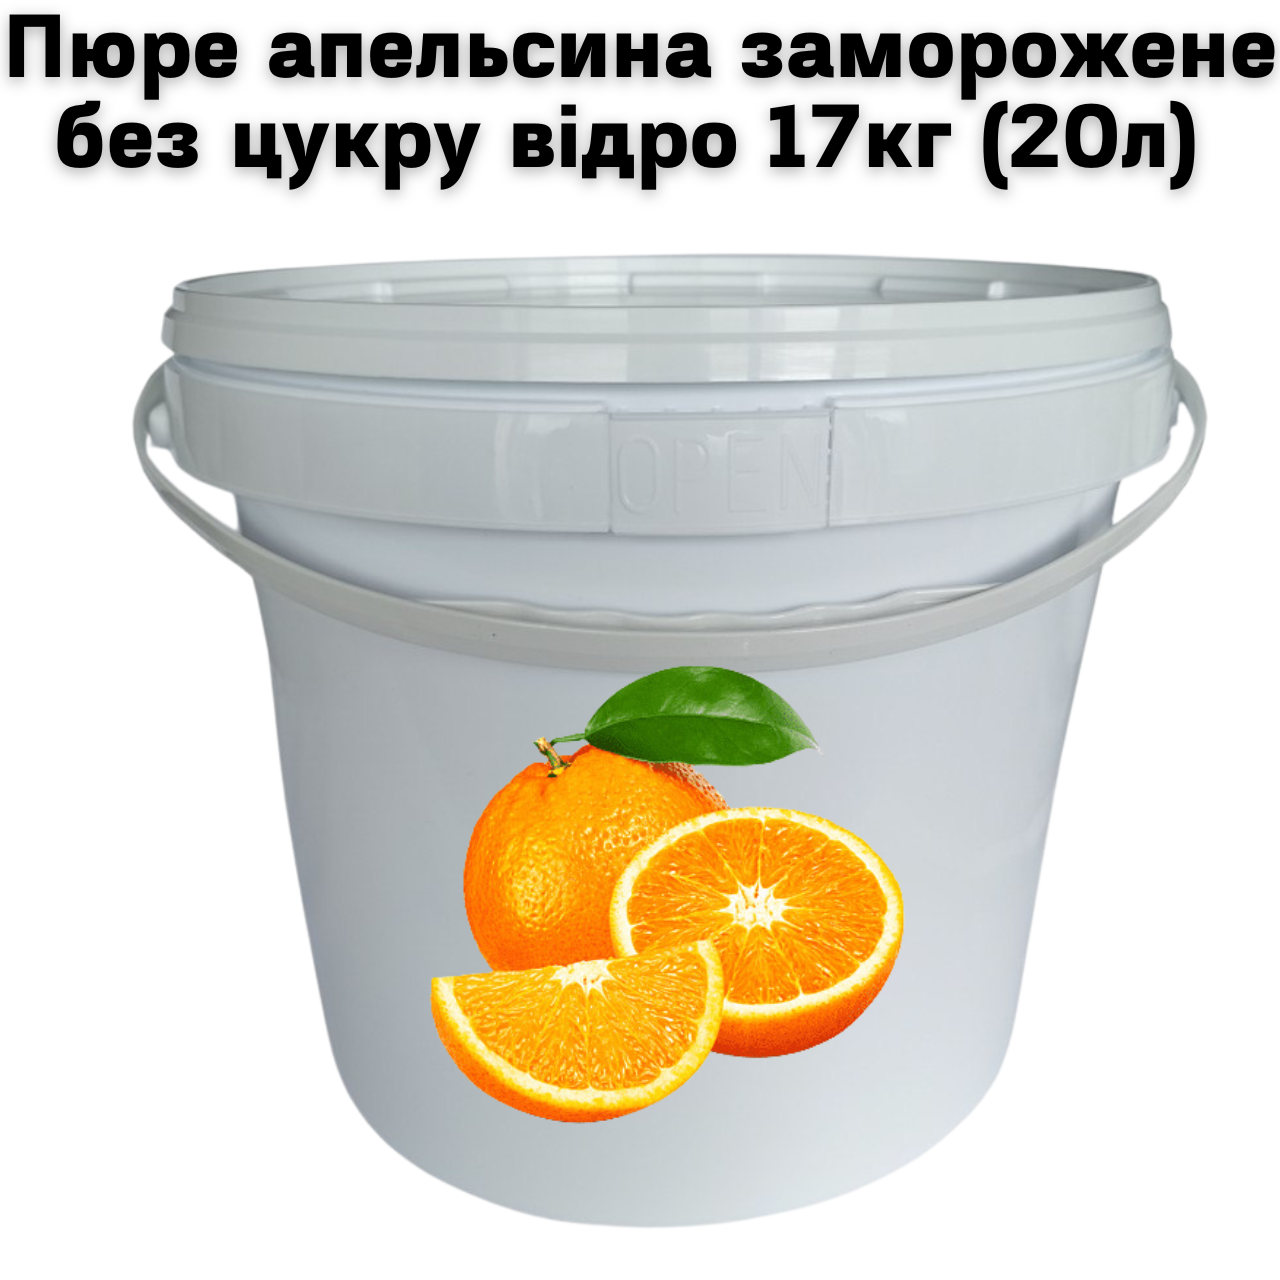 Апельсин пюре Fruity Land заморожене без цукру відро 17 кг (20л)